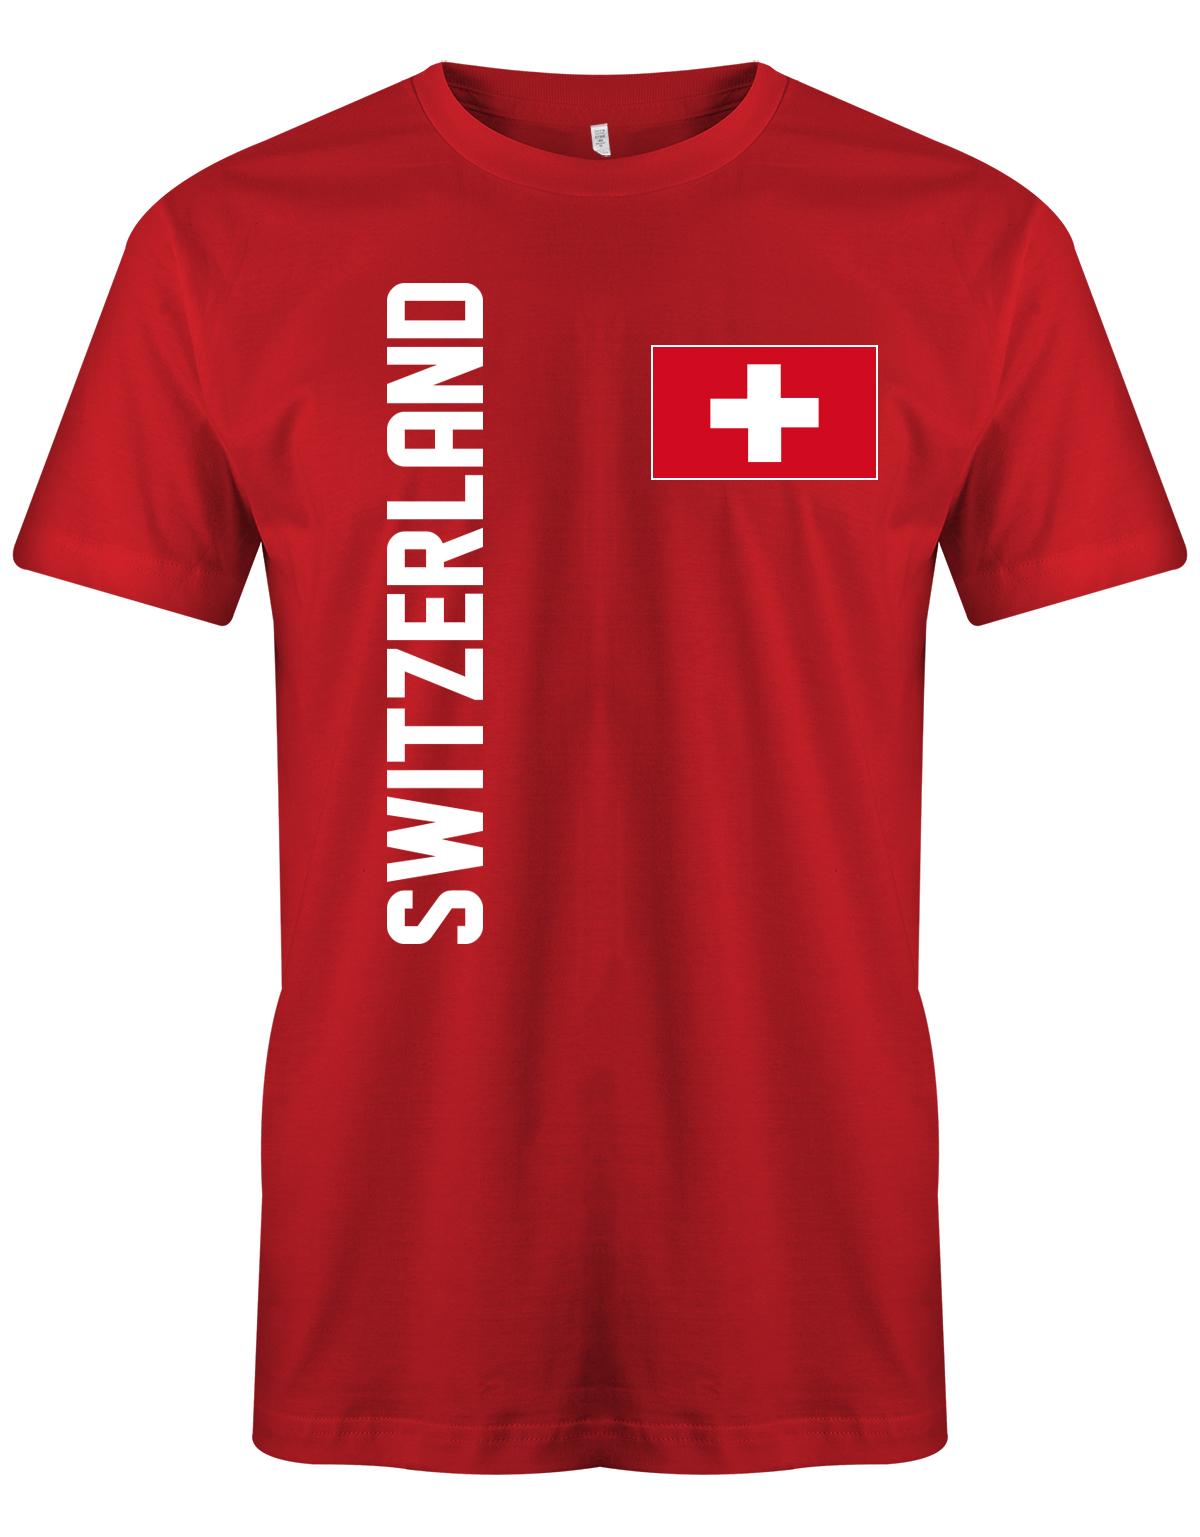 Switzerland-Fahne-Shirt-Herren-Rot